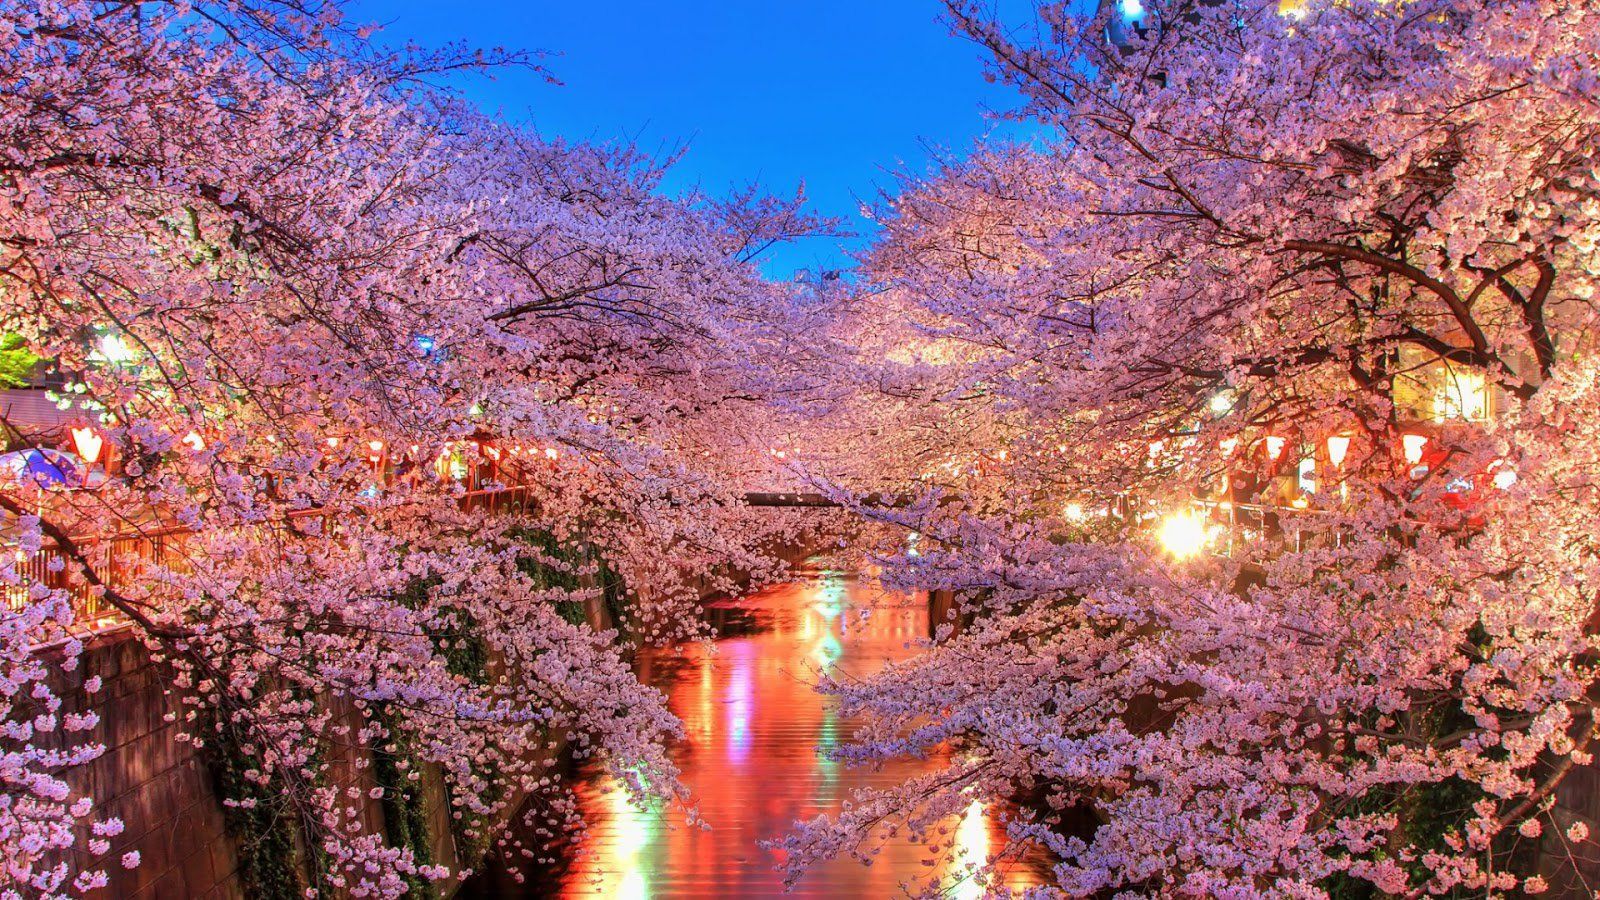 Wallpaper, 1600x900 px, flower, light, nature, night, peoples, sakura, spring, Tokyo, tree, water 1600x900